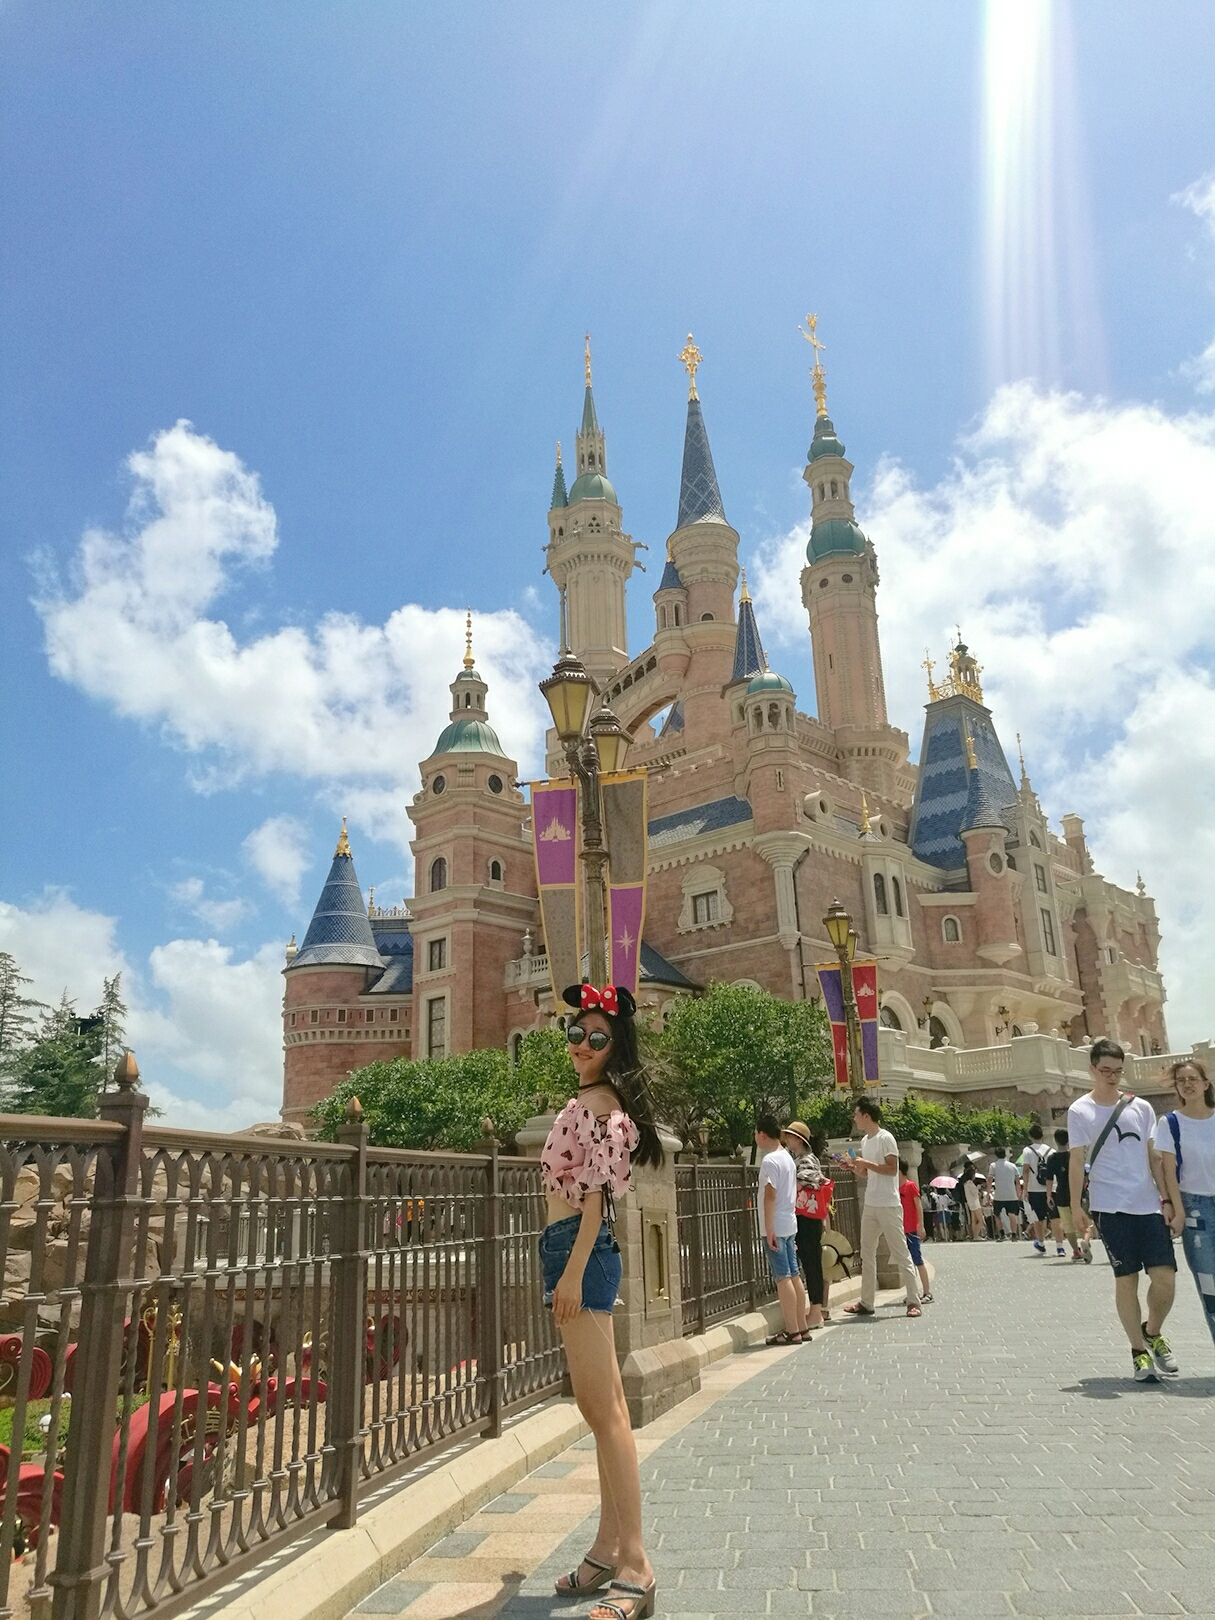 上海迪士尼  乐园  漫游童话时光之旅  这个特别的游乐项目就在城堡